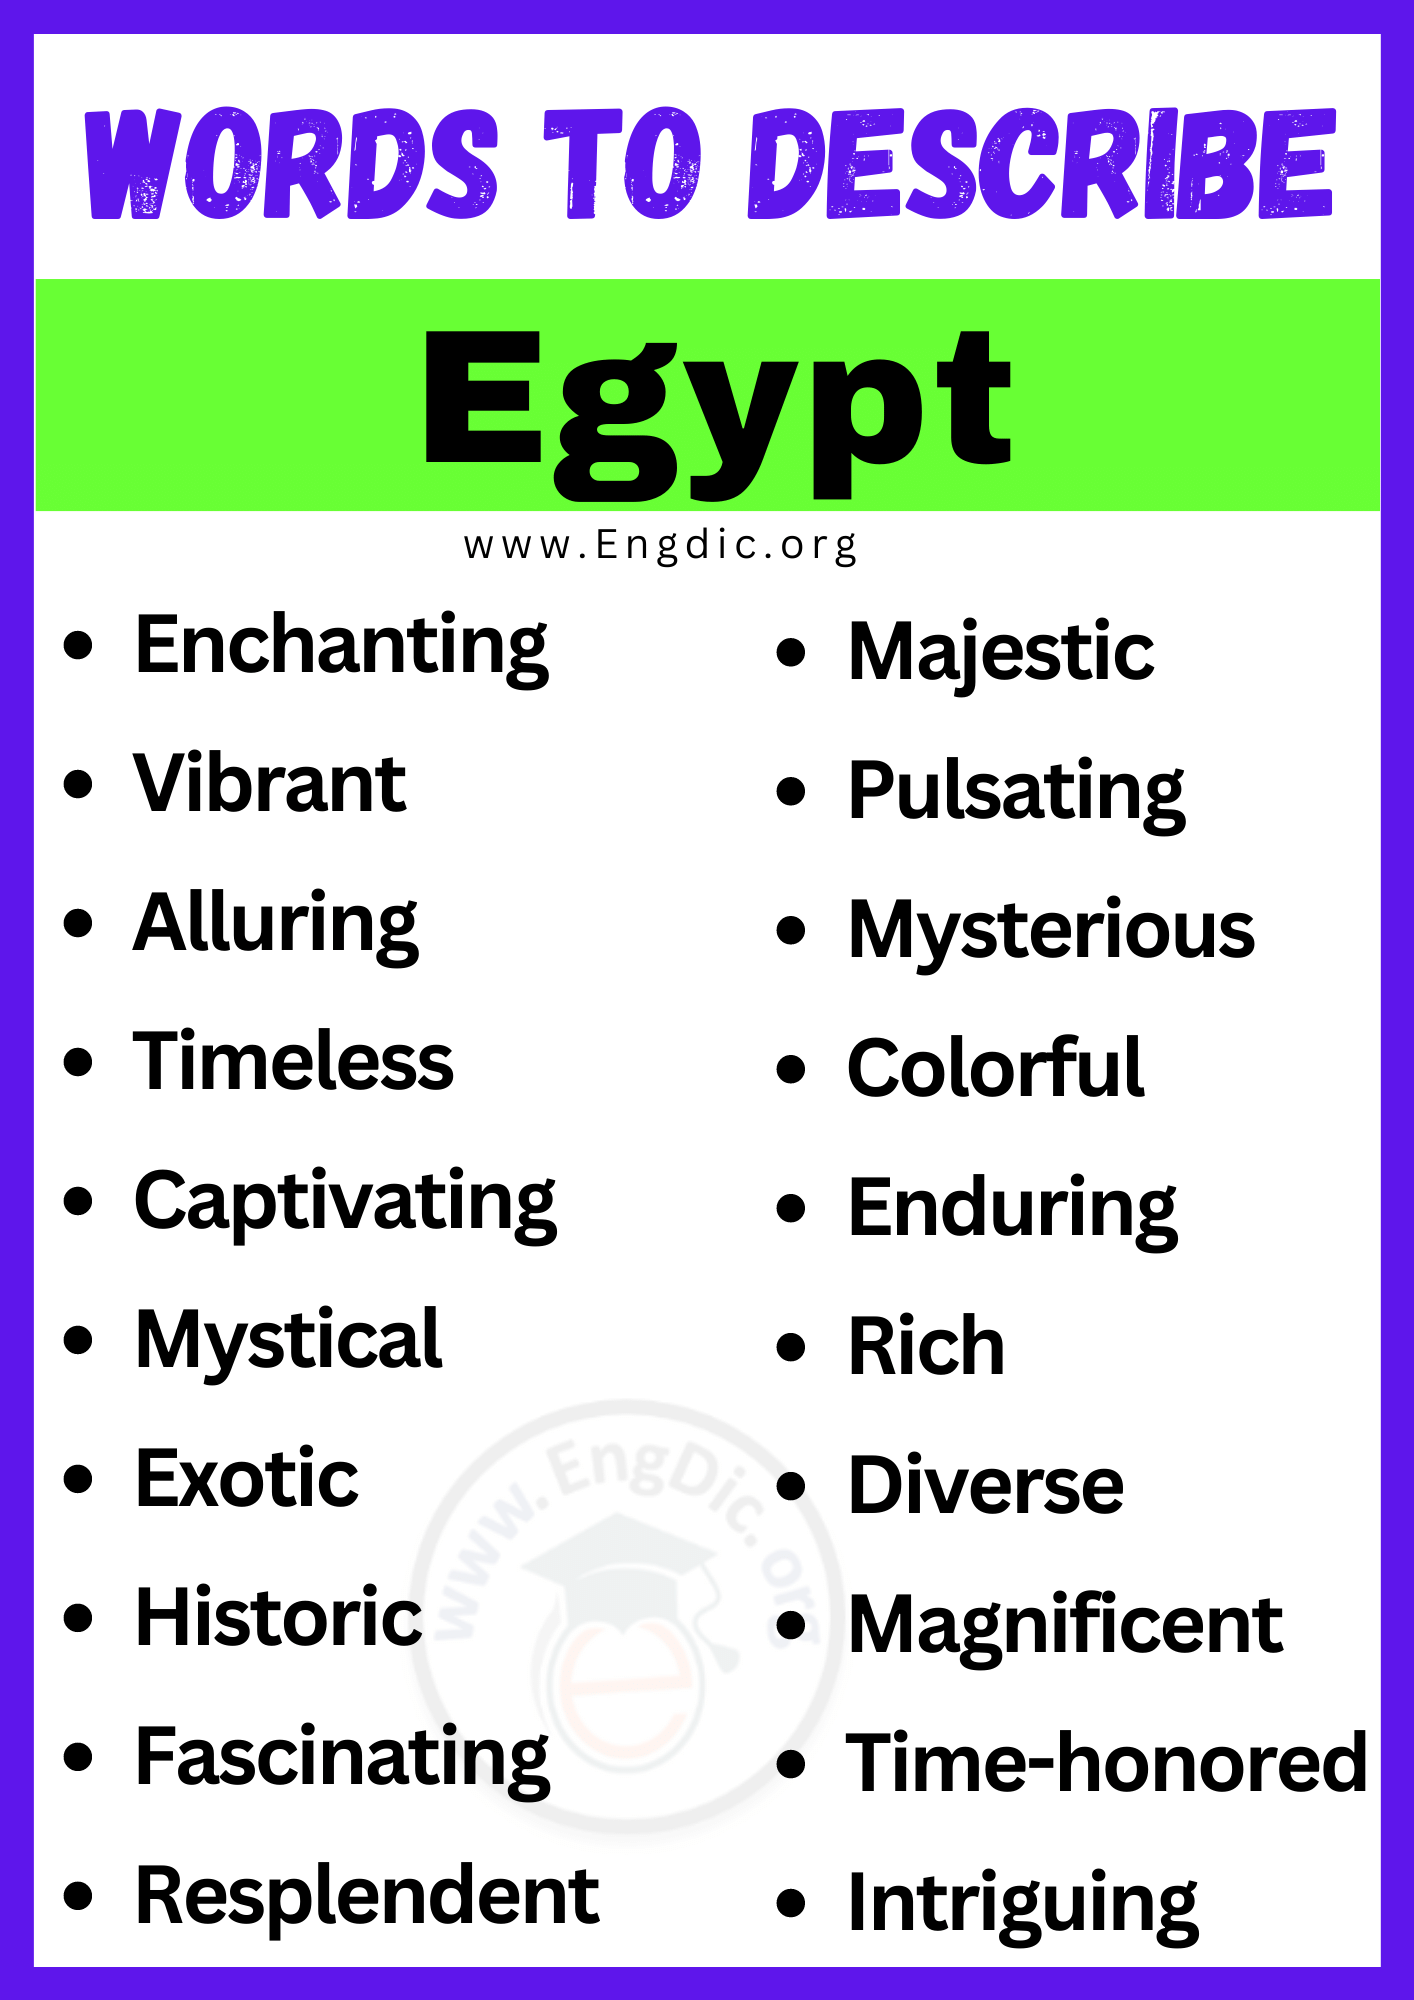 Words to Describe Egypt